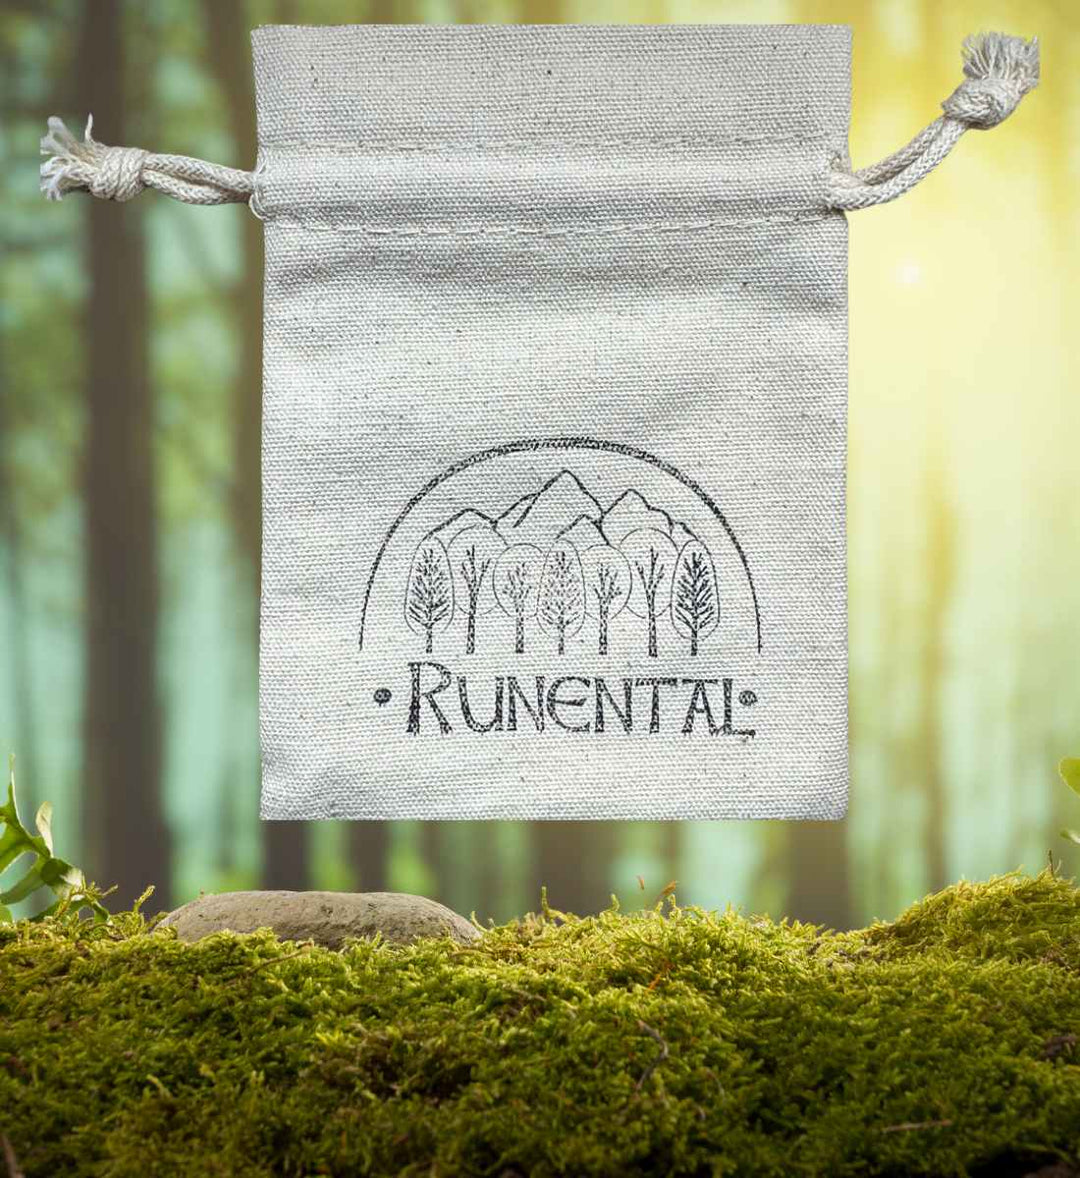 Recycelter Baumwollbeutel mit Runental-Druck, symbolisiert die Verbindung von Nachhaltigkeit und mystischer Tradition